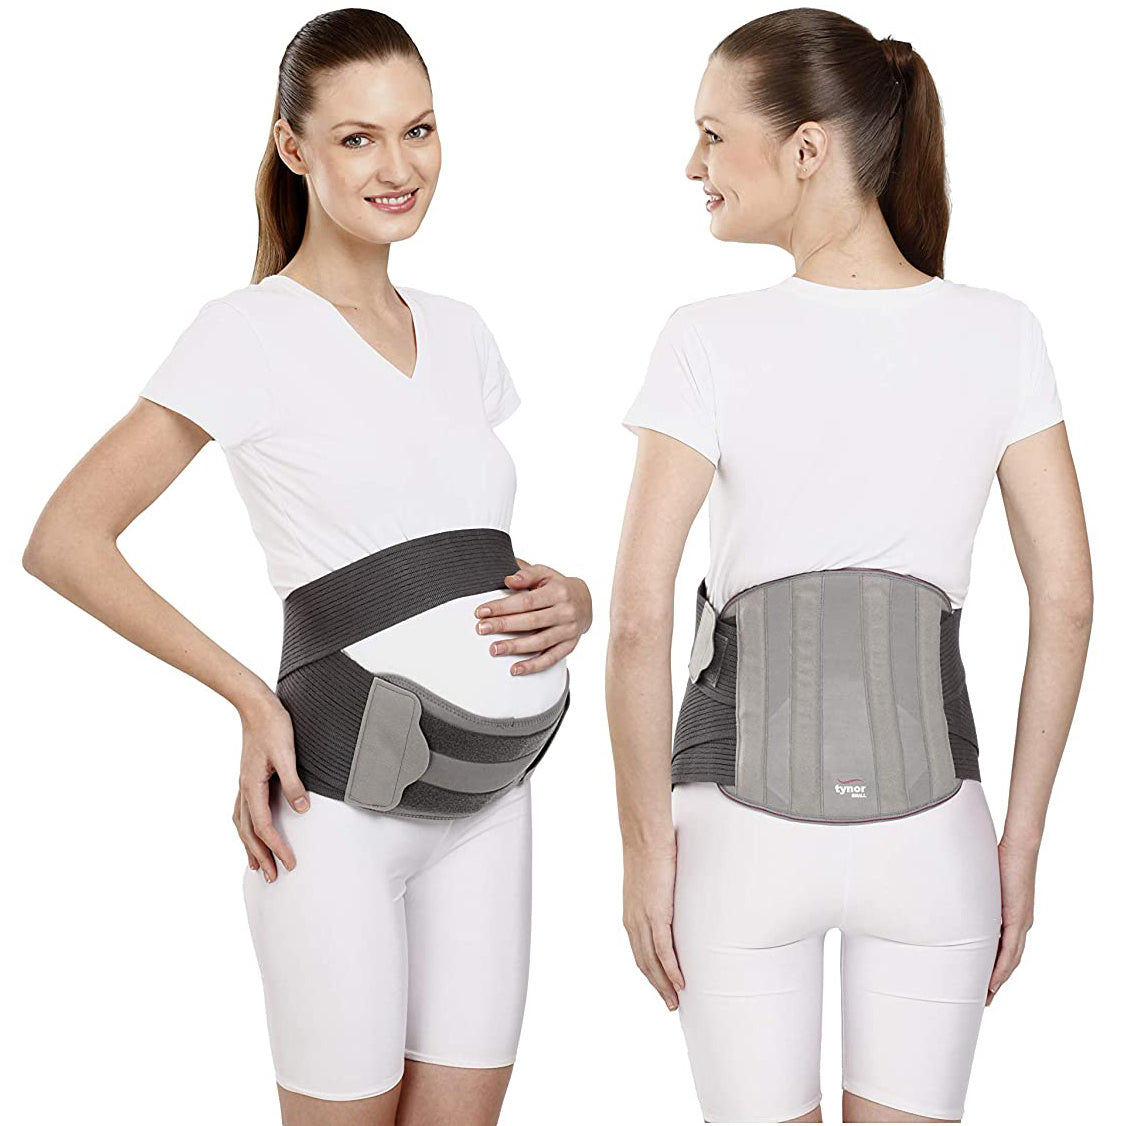 AHS Pregnancy Belt, Maternity Belt, Breathable Pregnancy Back Support, Premium Belly Band, Lightweight Abdominal Binder Pregnancy Belt-9